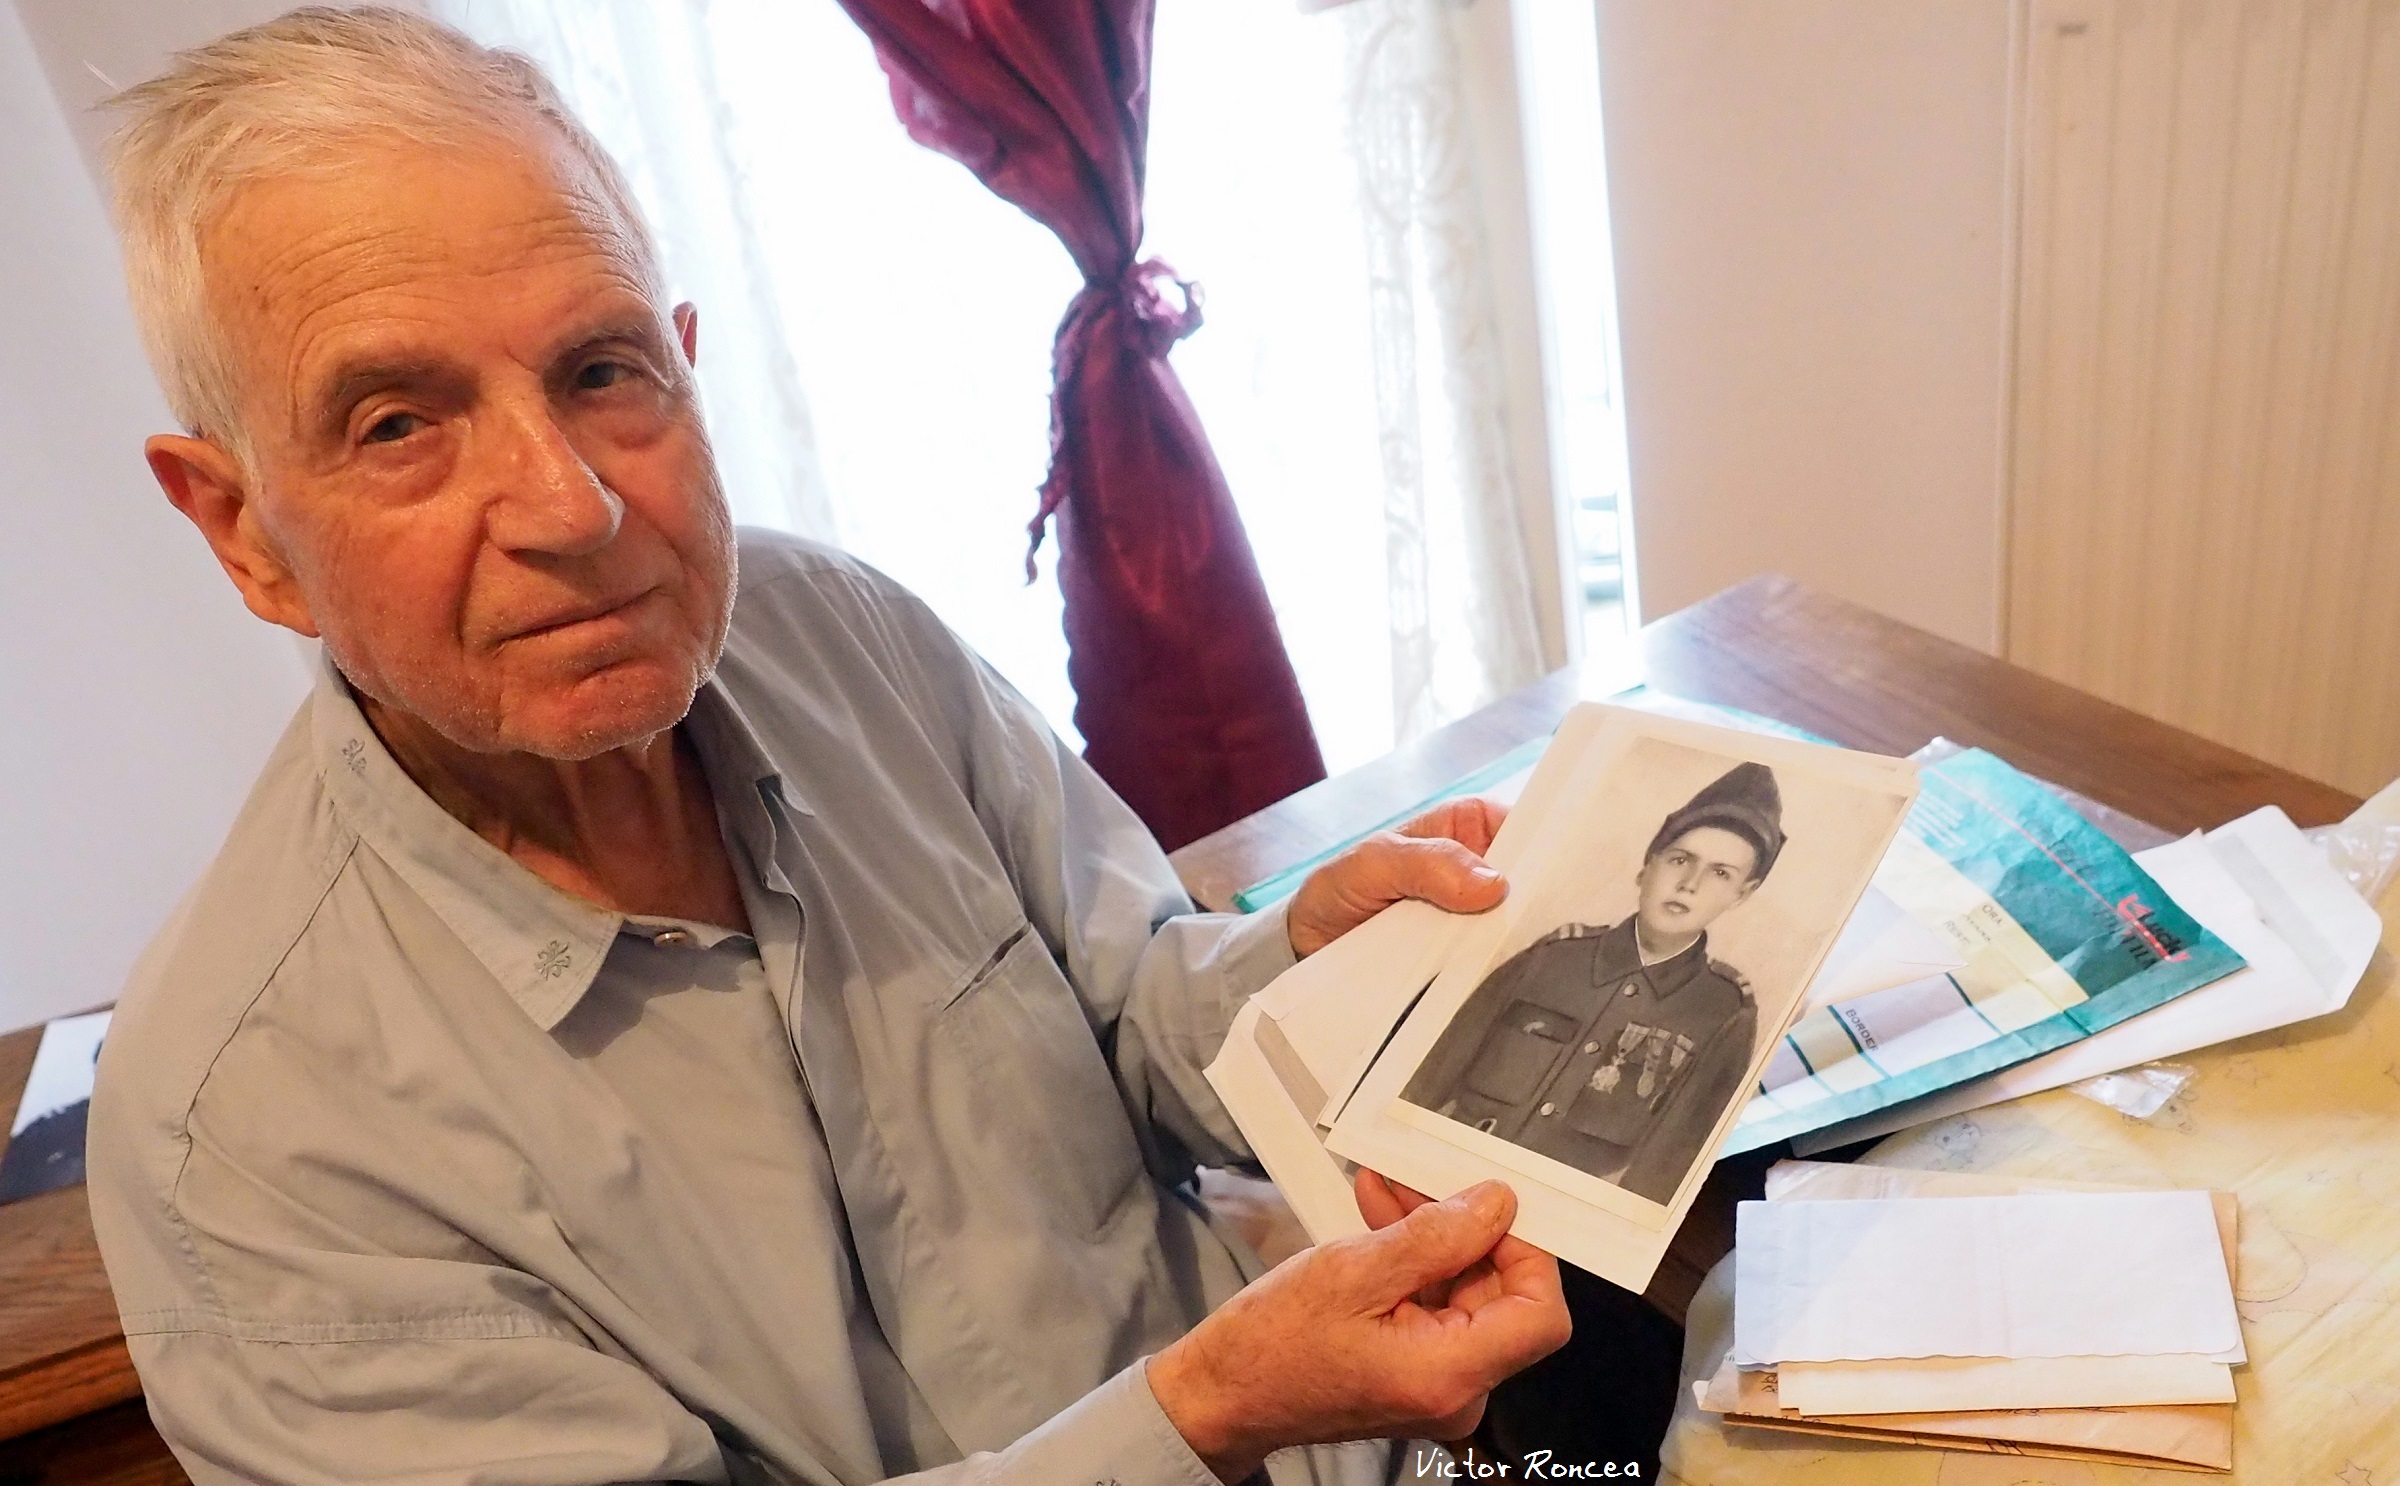 Acum 76 de ani elibera România de ocupanții ungro-germani. Azi este aruncat într-o locuință socială. Caporalul la 9 ani – prea mare pentru un stat atât de mic. Premierul maghiar și Președintele german nu au catadicsit să-i răspundă Memoriilor